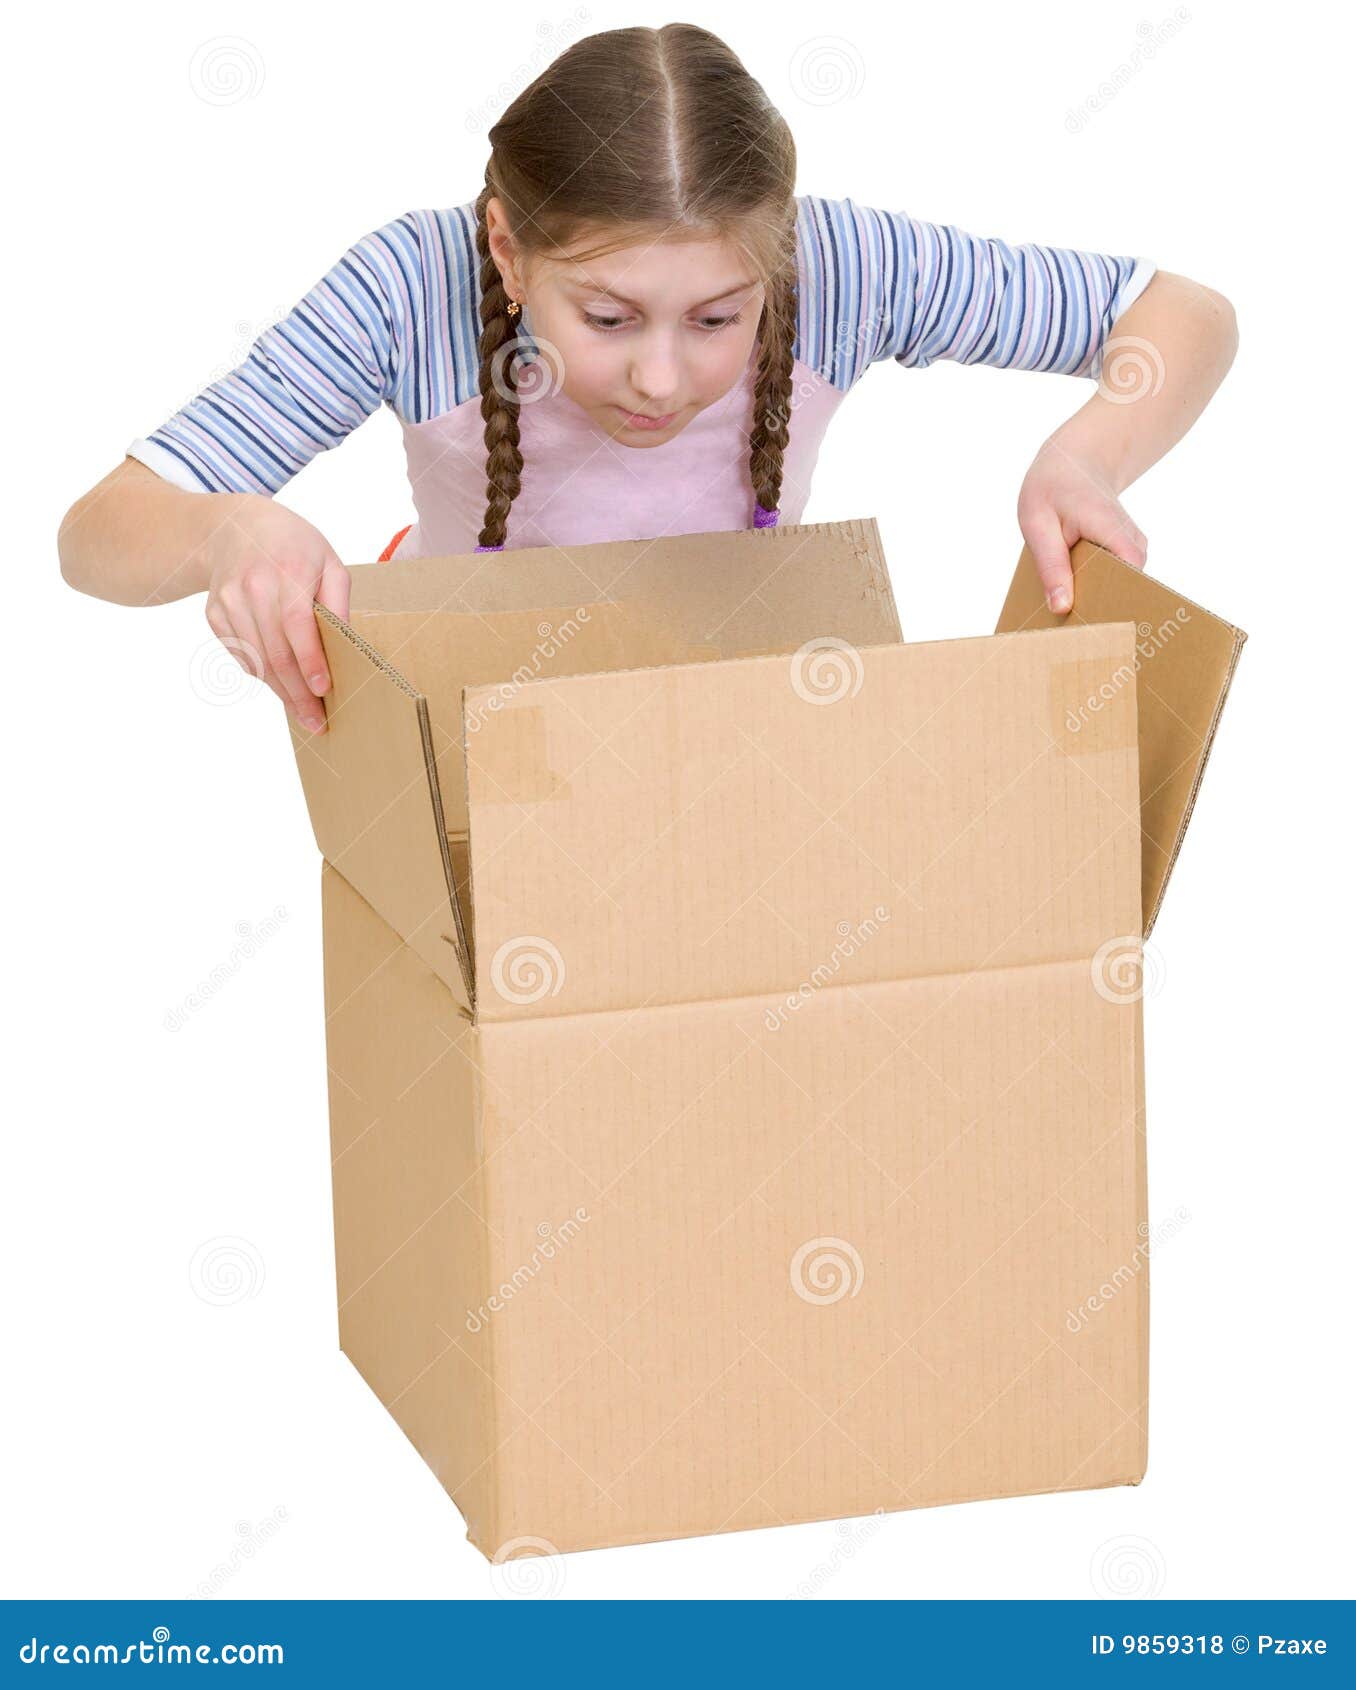 girl glance at cardboard box